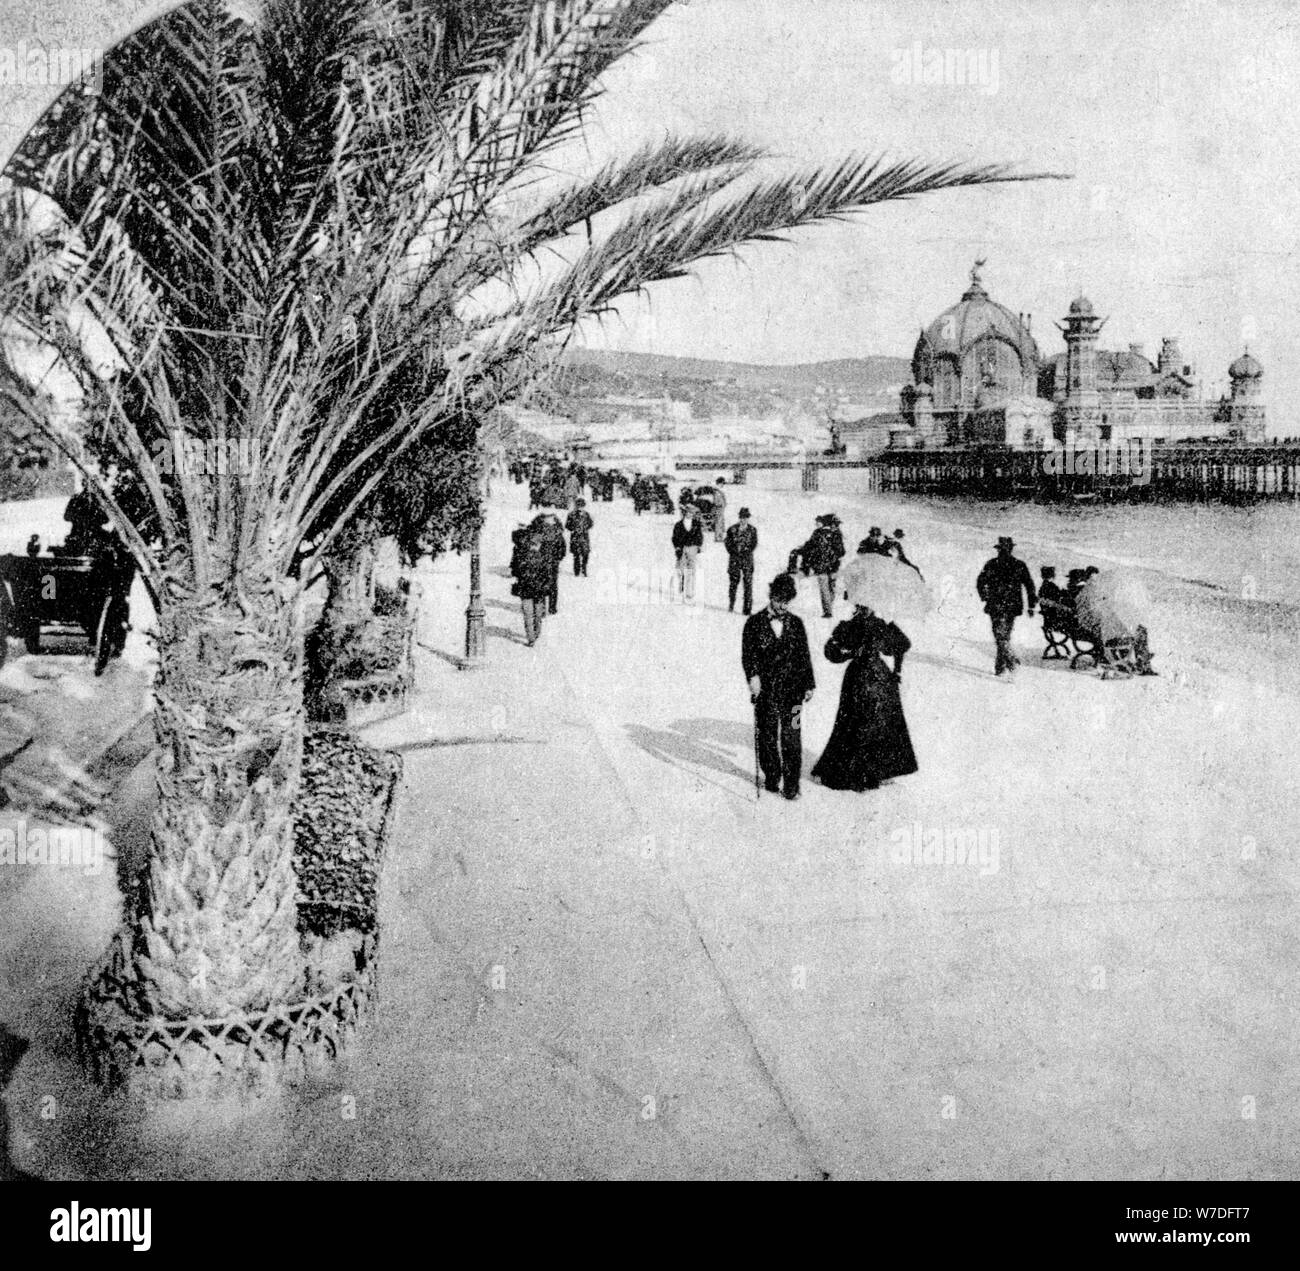 La Promenade des Anglais, Nice, France, fin du xixe siècle. Artiste : Inconnu Banque D'Images